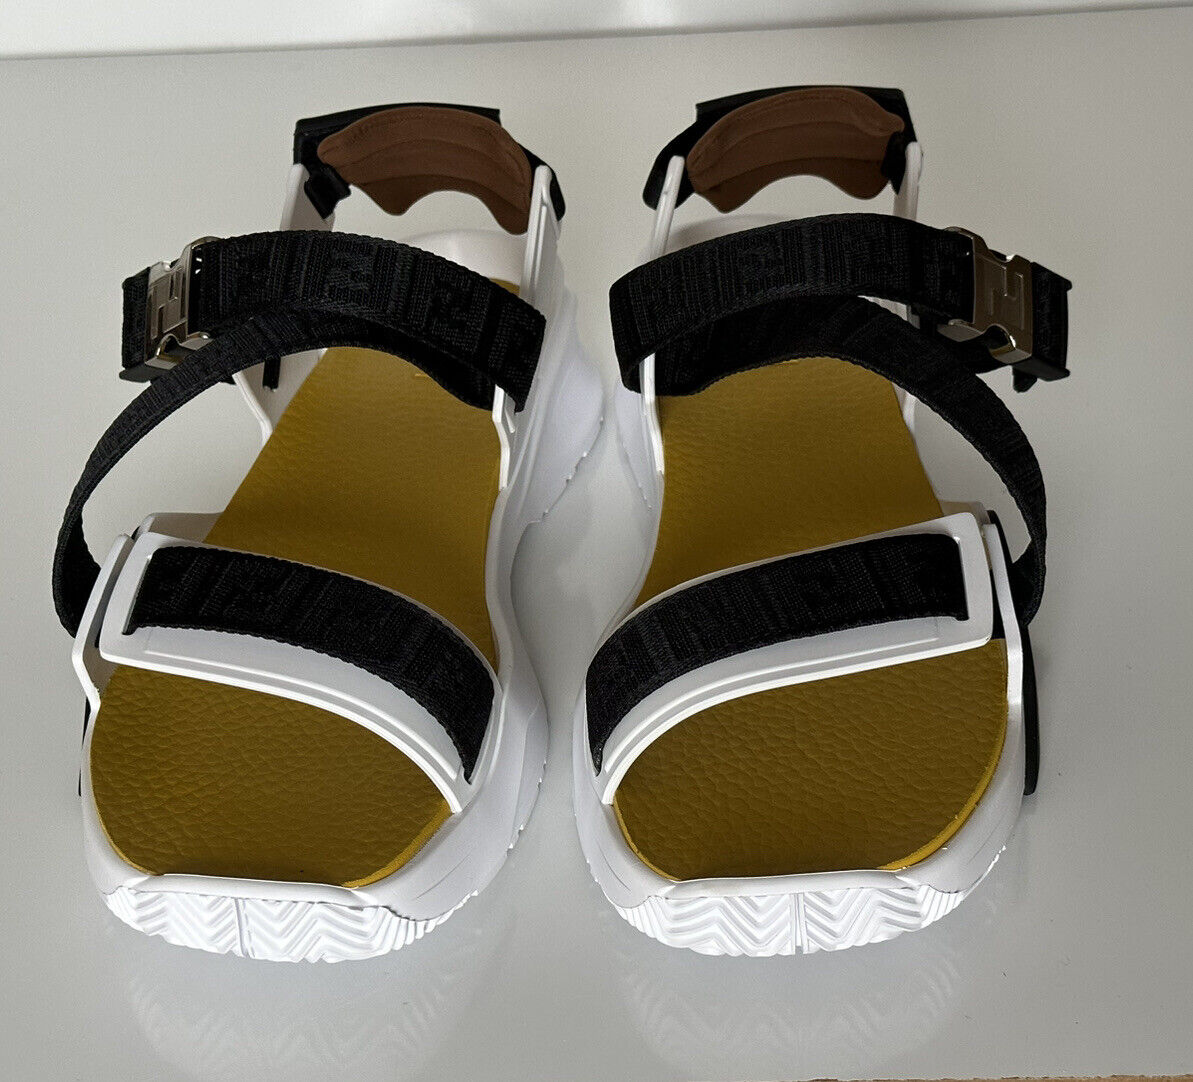 Мужские сандалии Fendi с ремешками FF 895 долларов США 11 США/10 Великобритания Италия 7X1503 